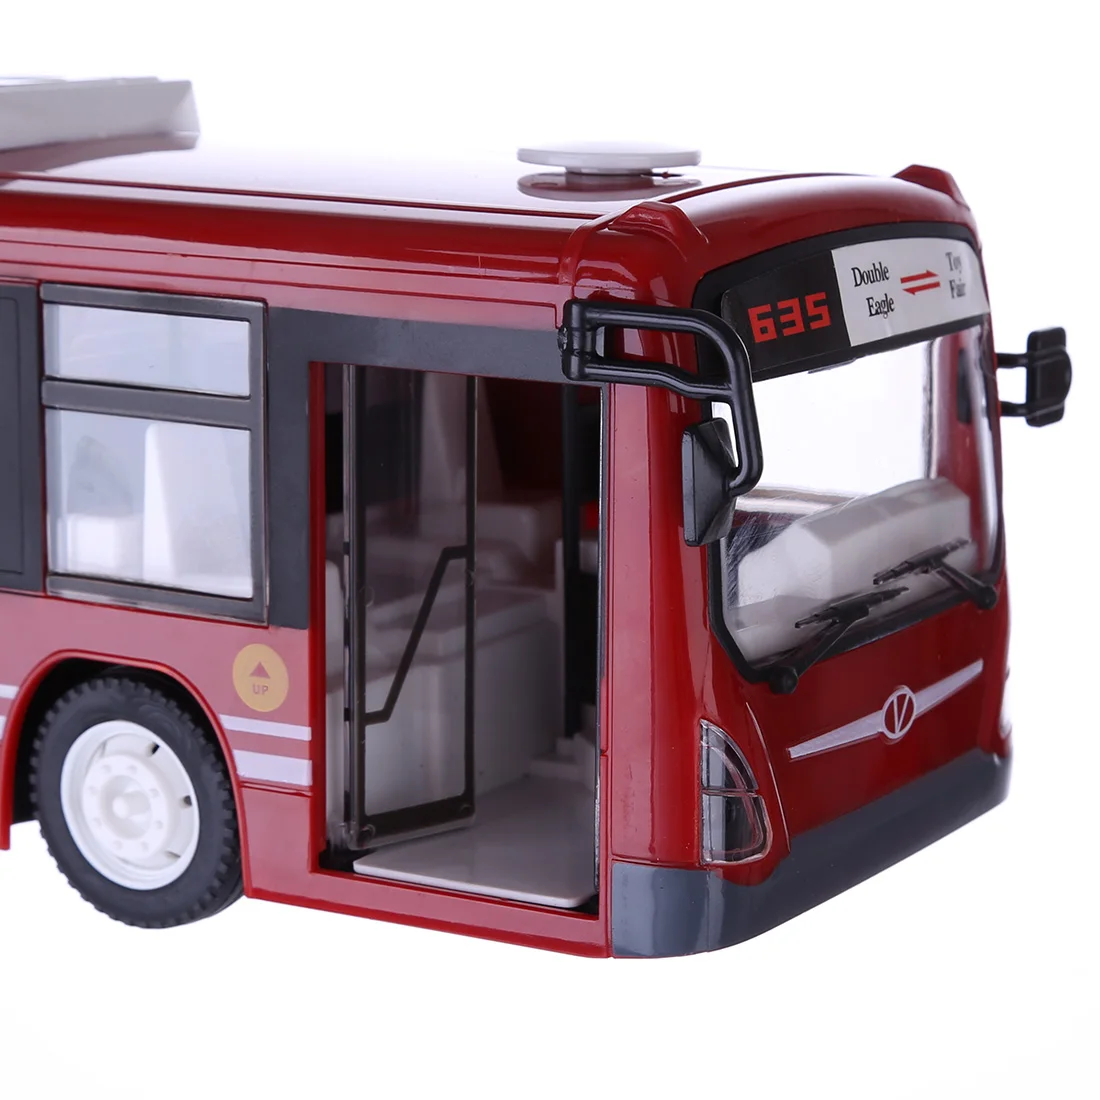 2,4 G RC-Bil, Bus City Express Model RC Toy Bil Med Realistisk Lys Og Lyd - Rød